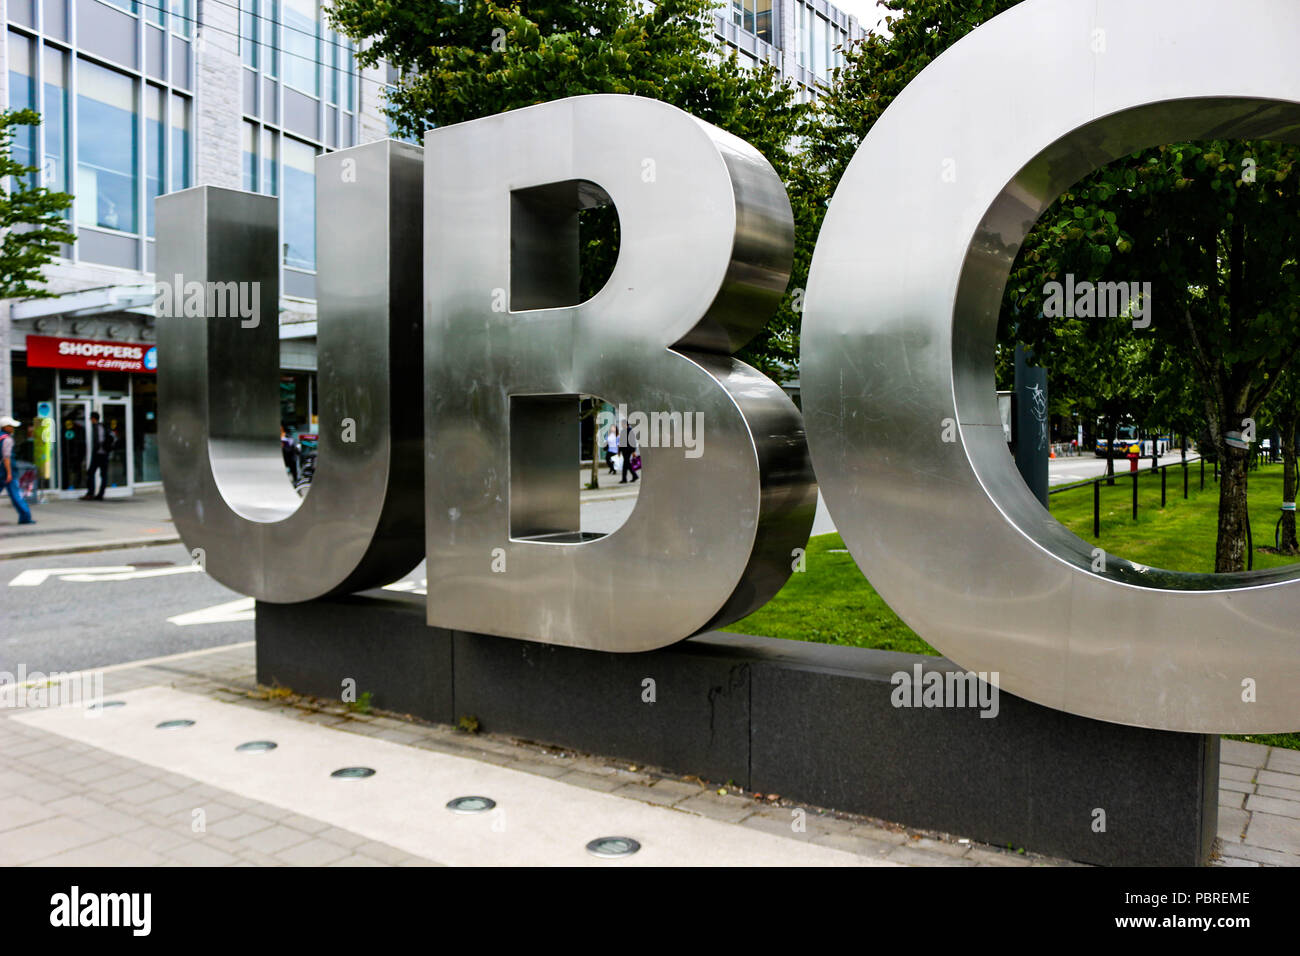 Vancouver, British Columbia, 20. Juni 2018: Editorial Foto der UBC Zeichen, dass bedeutet, dass sie sich an der Universität von British Columbia Campus. UBC ist für Ihre erstaunlichen Wissenschaftler bekannt. Stockfoto